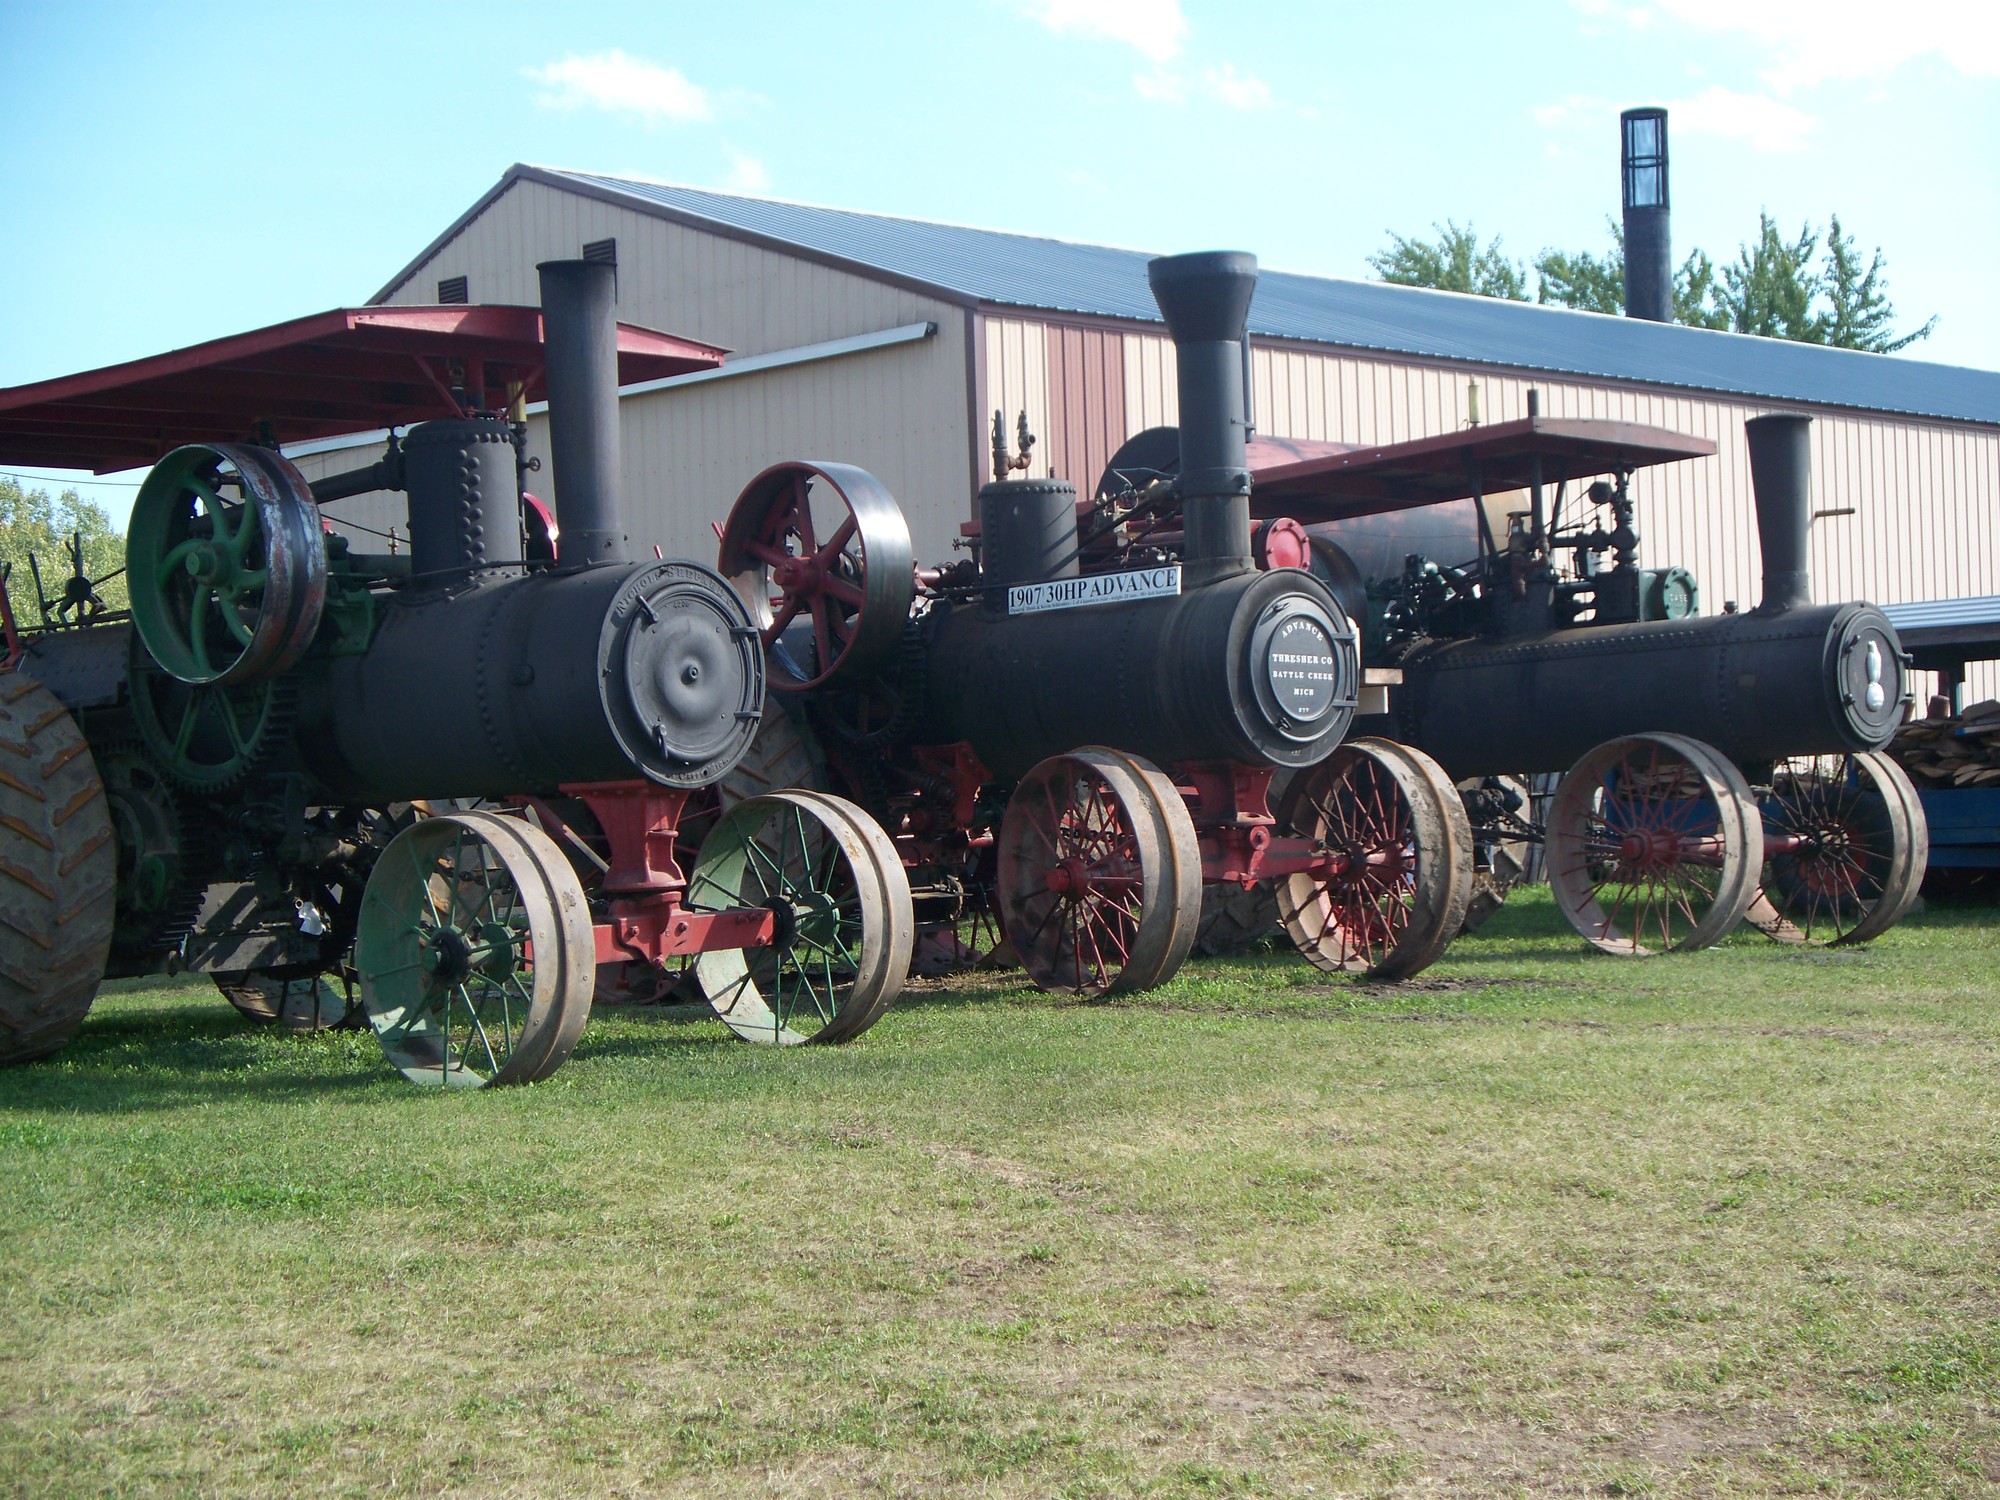 A row of vintage tractors